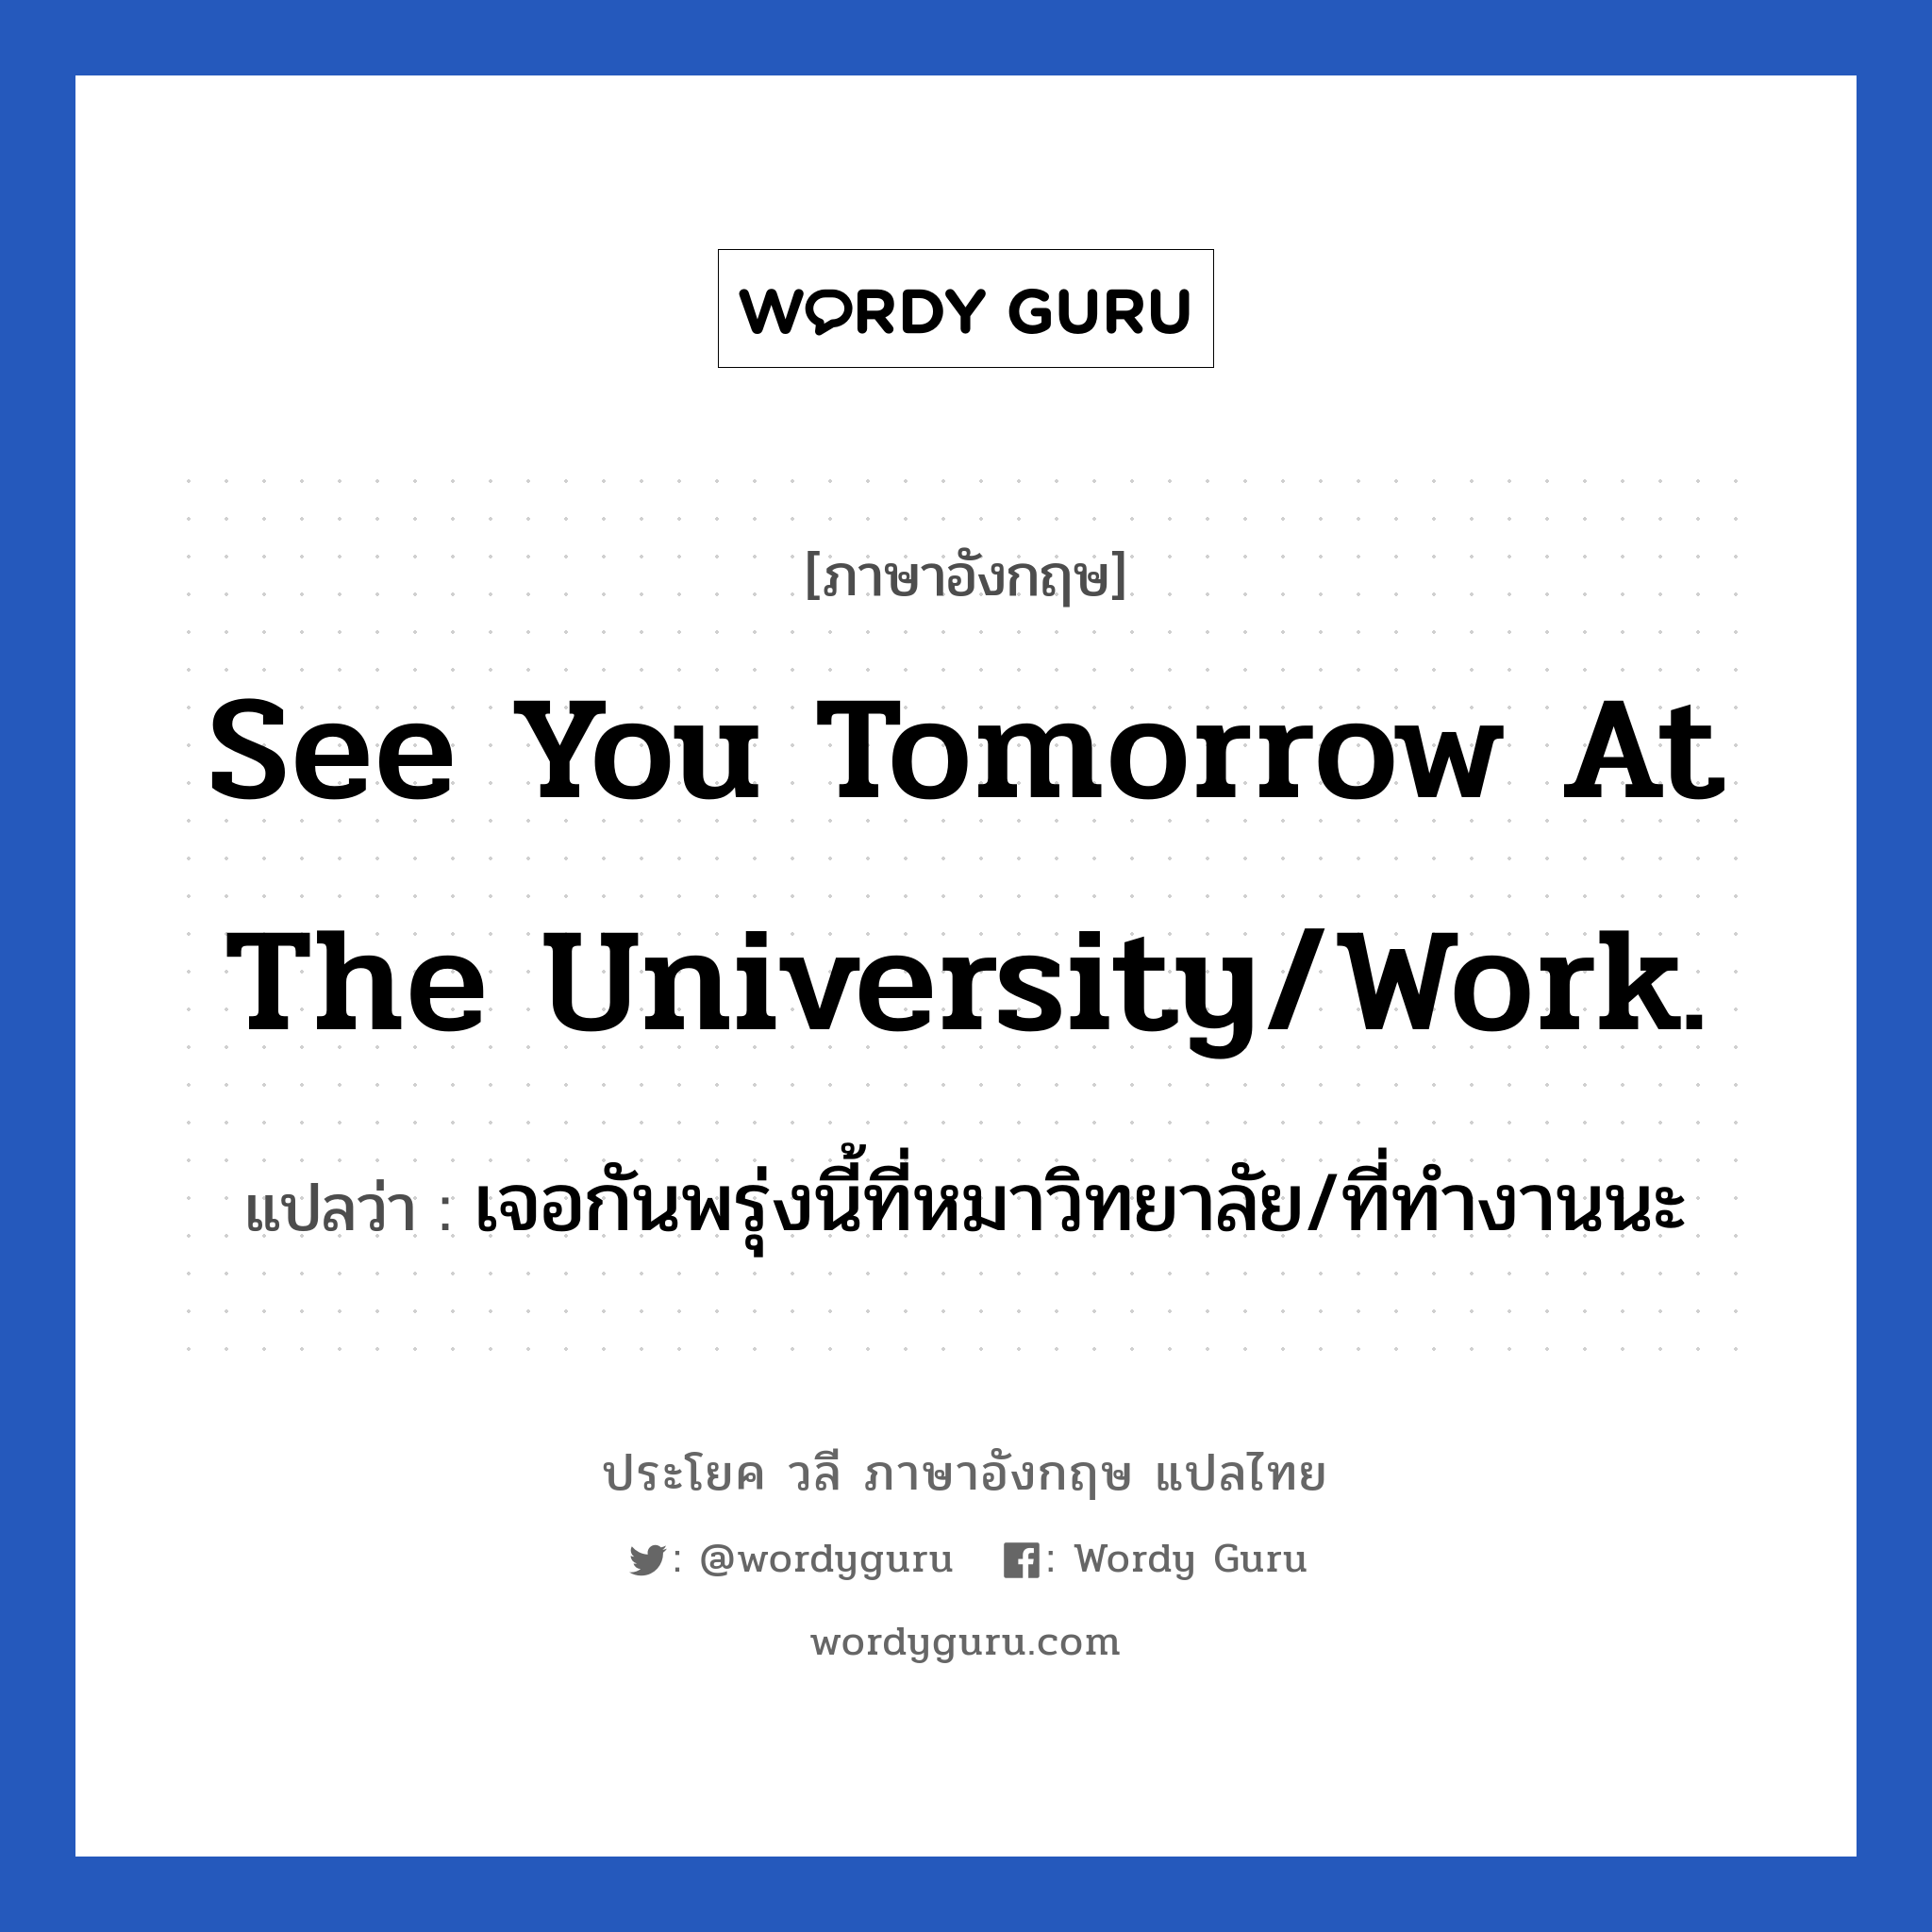 เจอกันพรุ่งนี้ที่หมาวิทยาลัย/ที่ทำงานนะ ภาษาอังกฤษ?, วลีภาษาอังกฤษ เจอกันพรุ่งนี้ที่หมาวิทยาลัย/ที่ทำงานนะ แปลว่า See you tomorrow at the university/work. หมวด การบอกลา